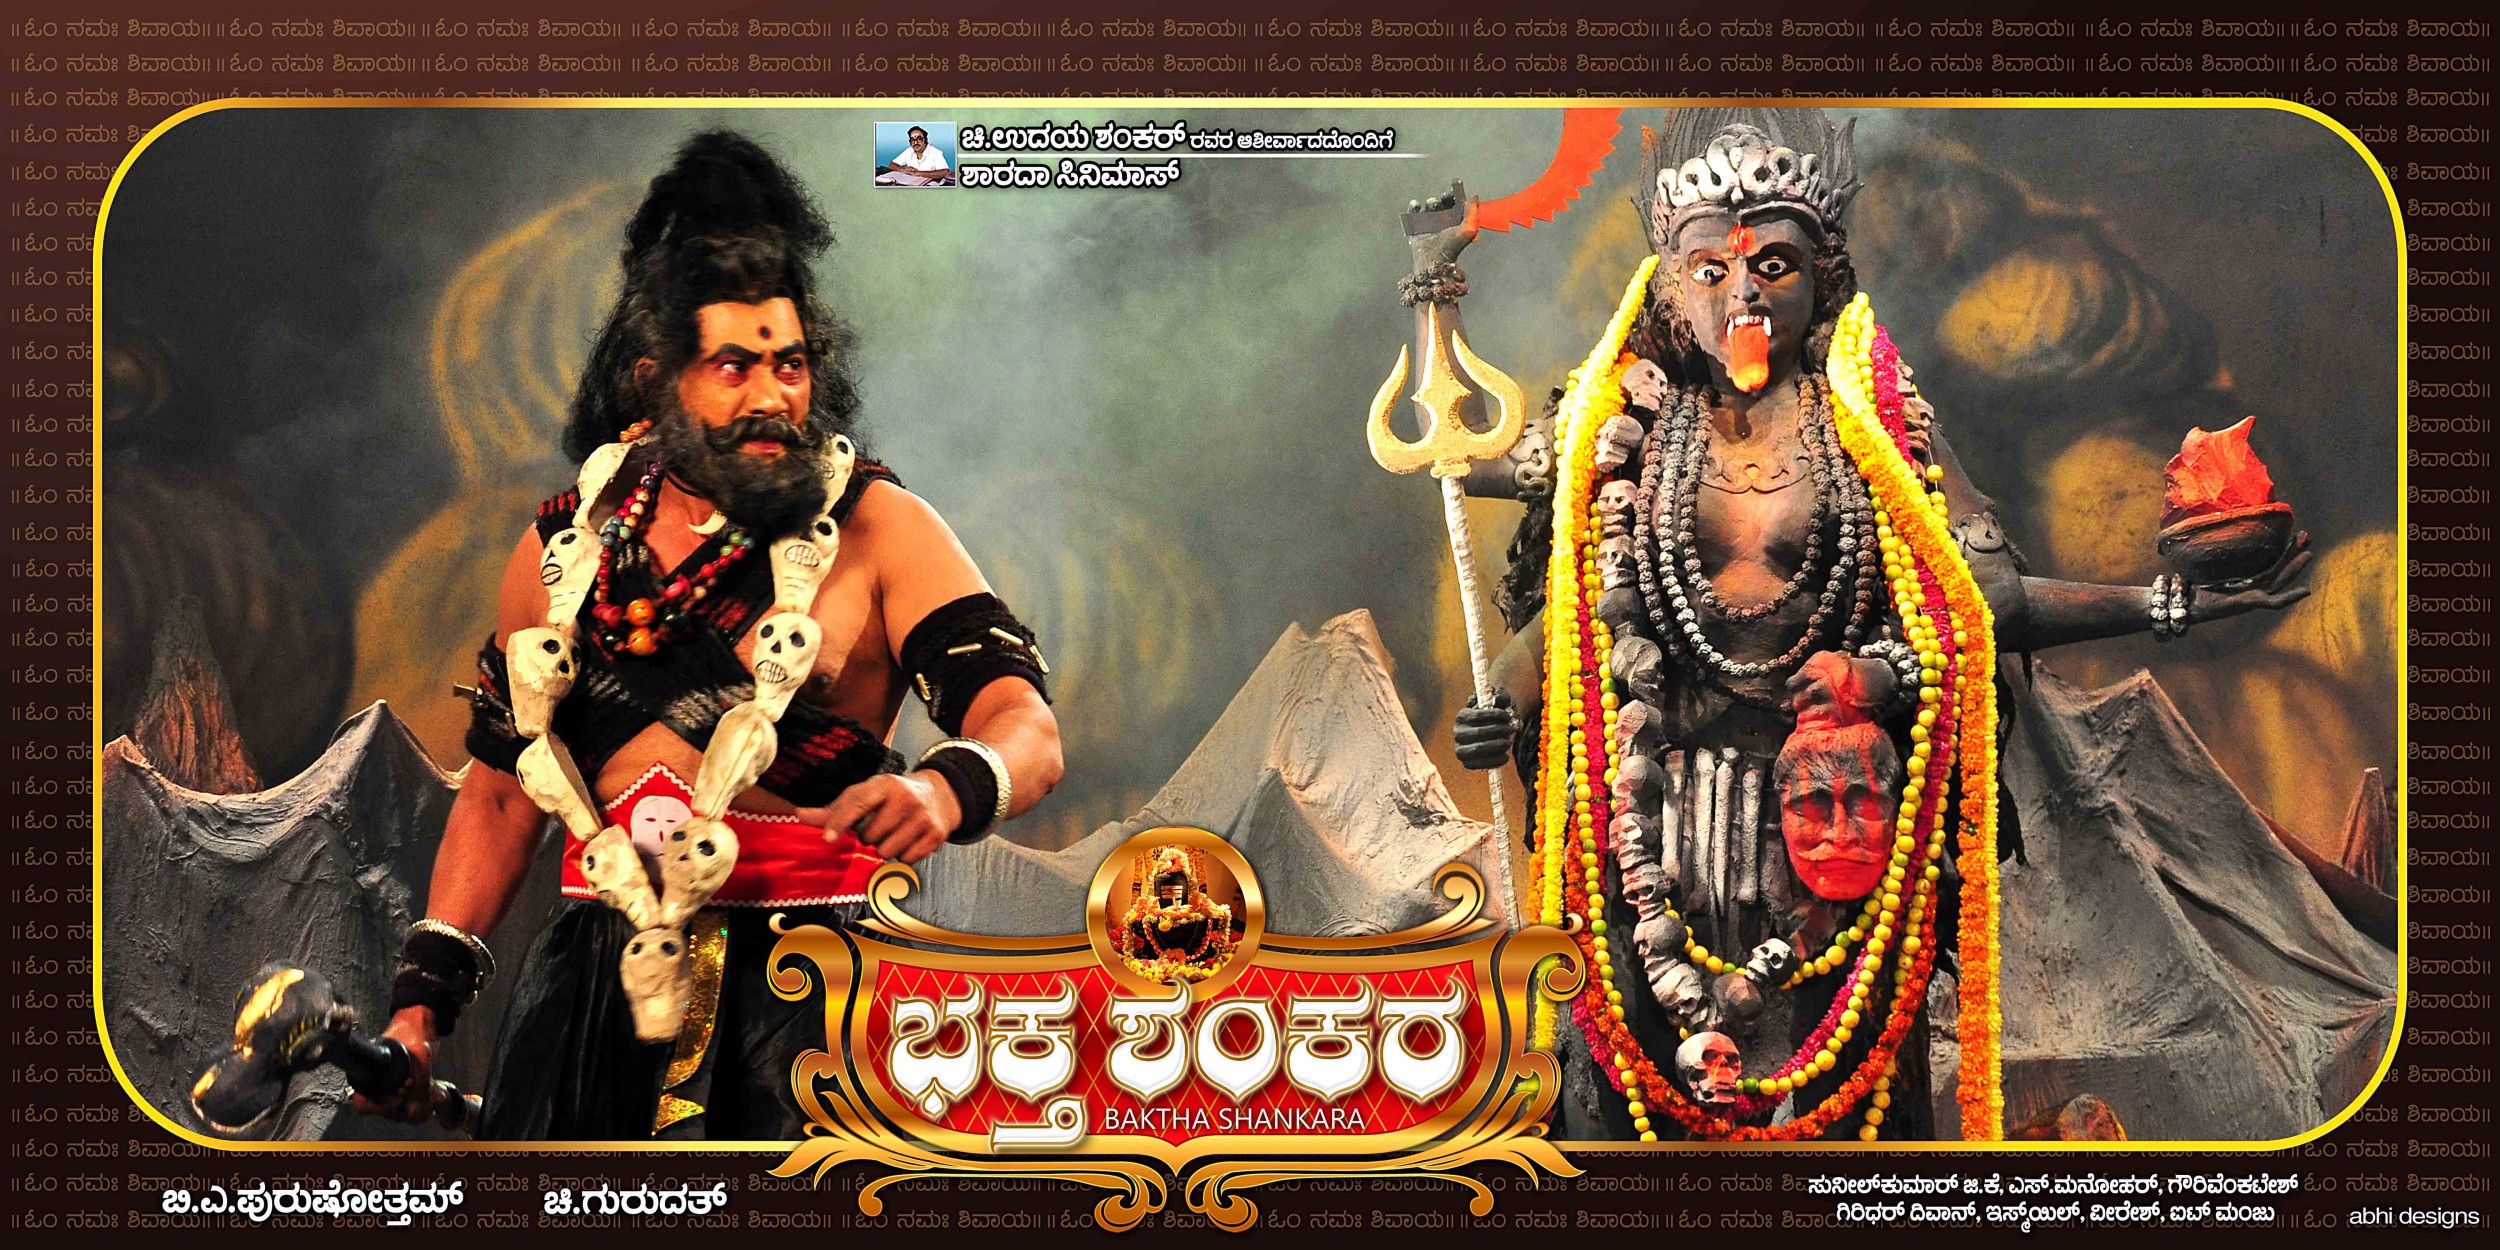 Mega Sized Movie Poster Image for Baktha Shankara (#9 of 10)